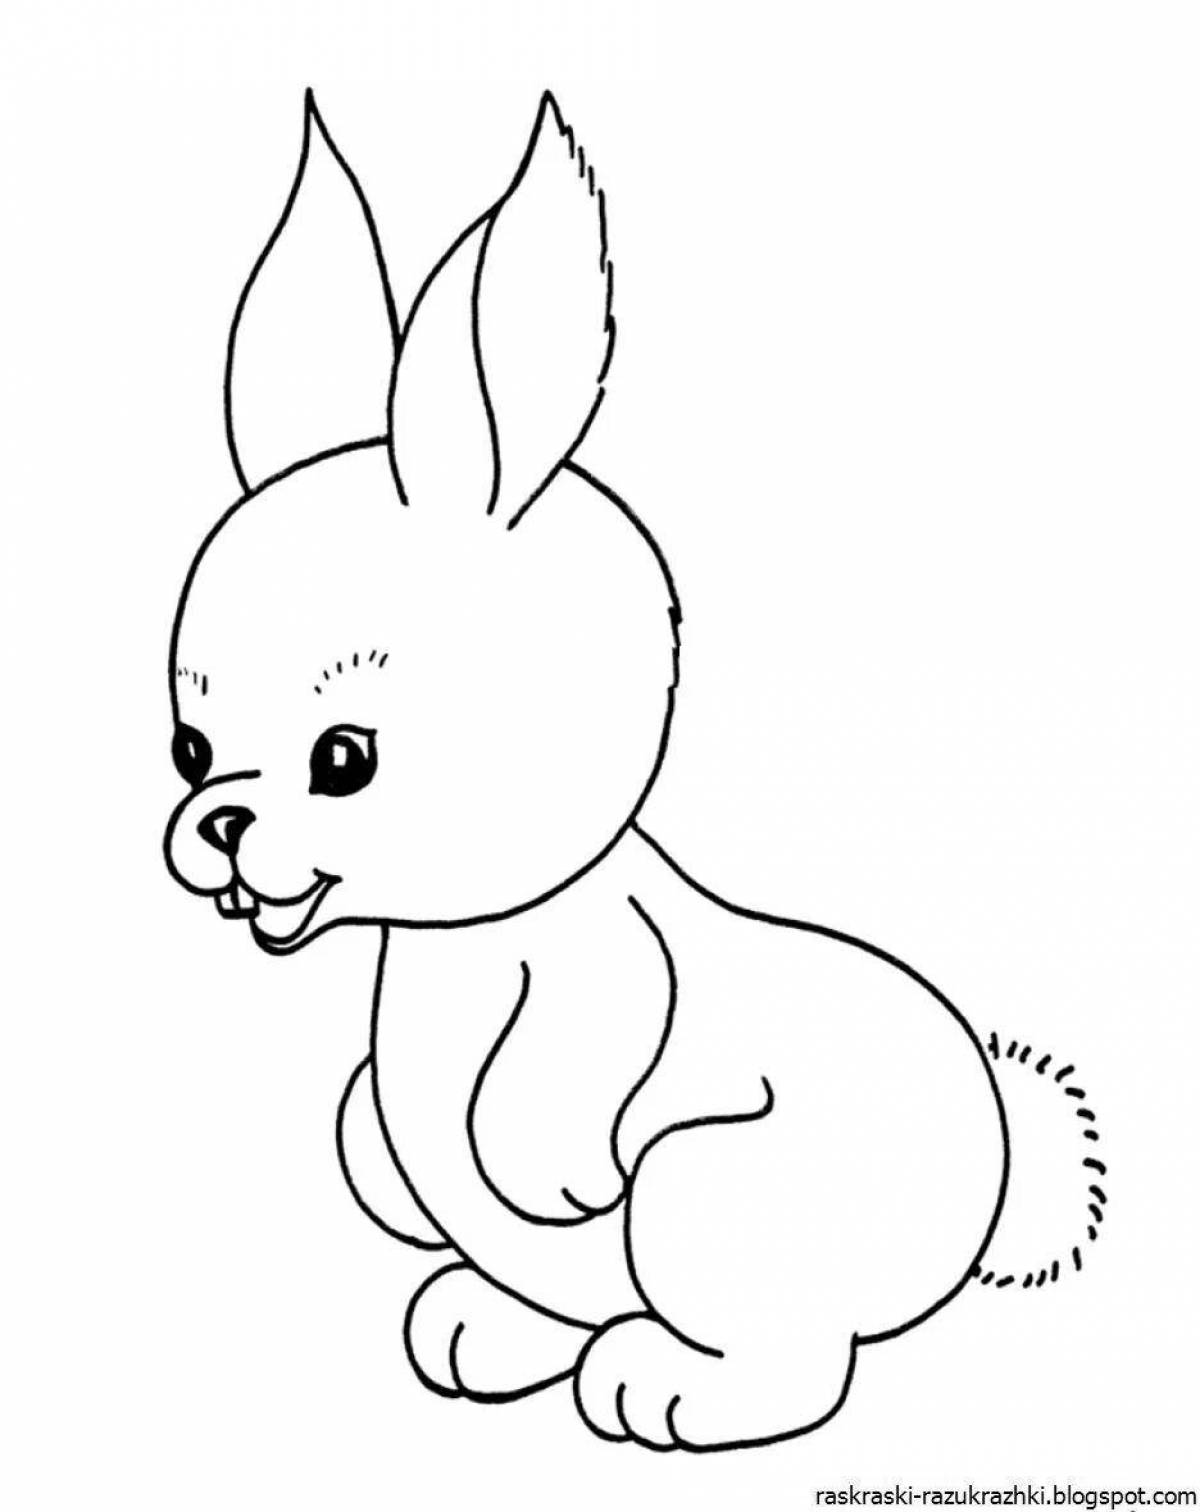 Креативный рисунок кролика для детей